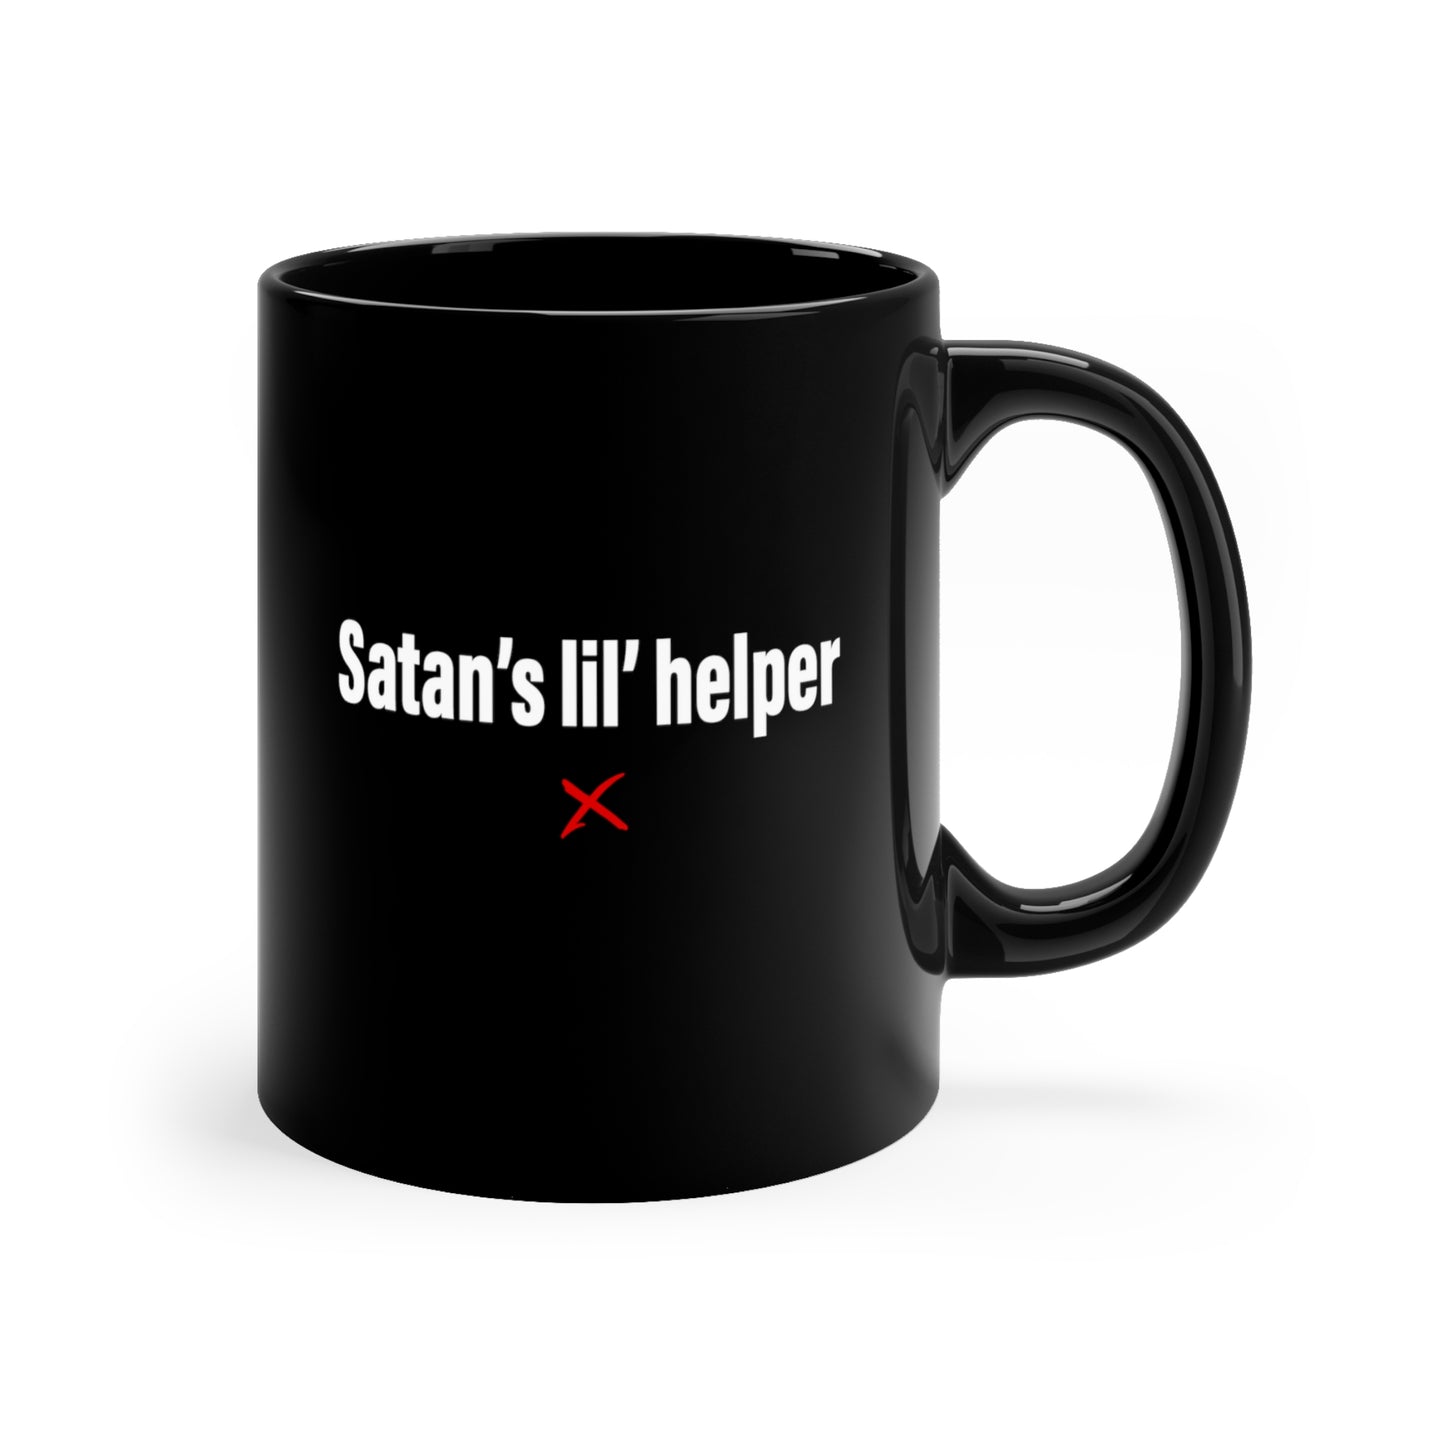 Satan's lil' helper - Mug